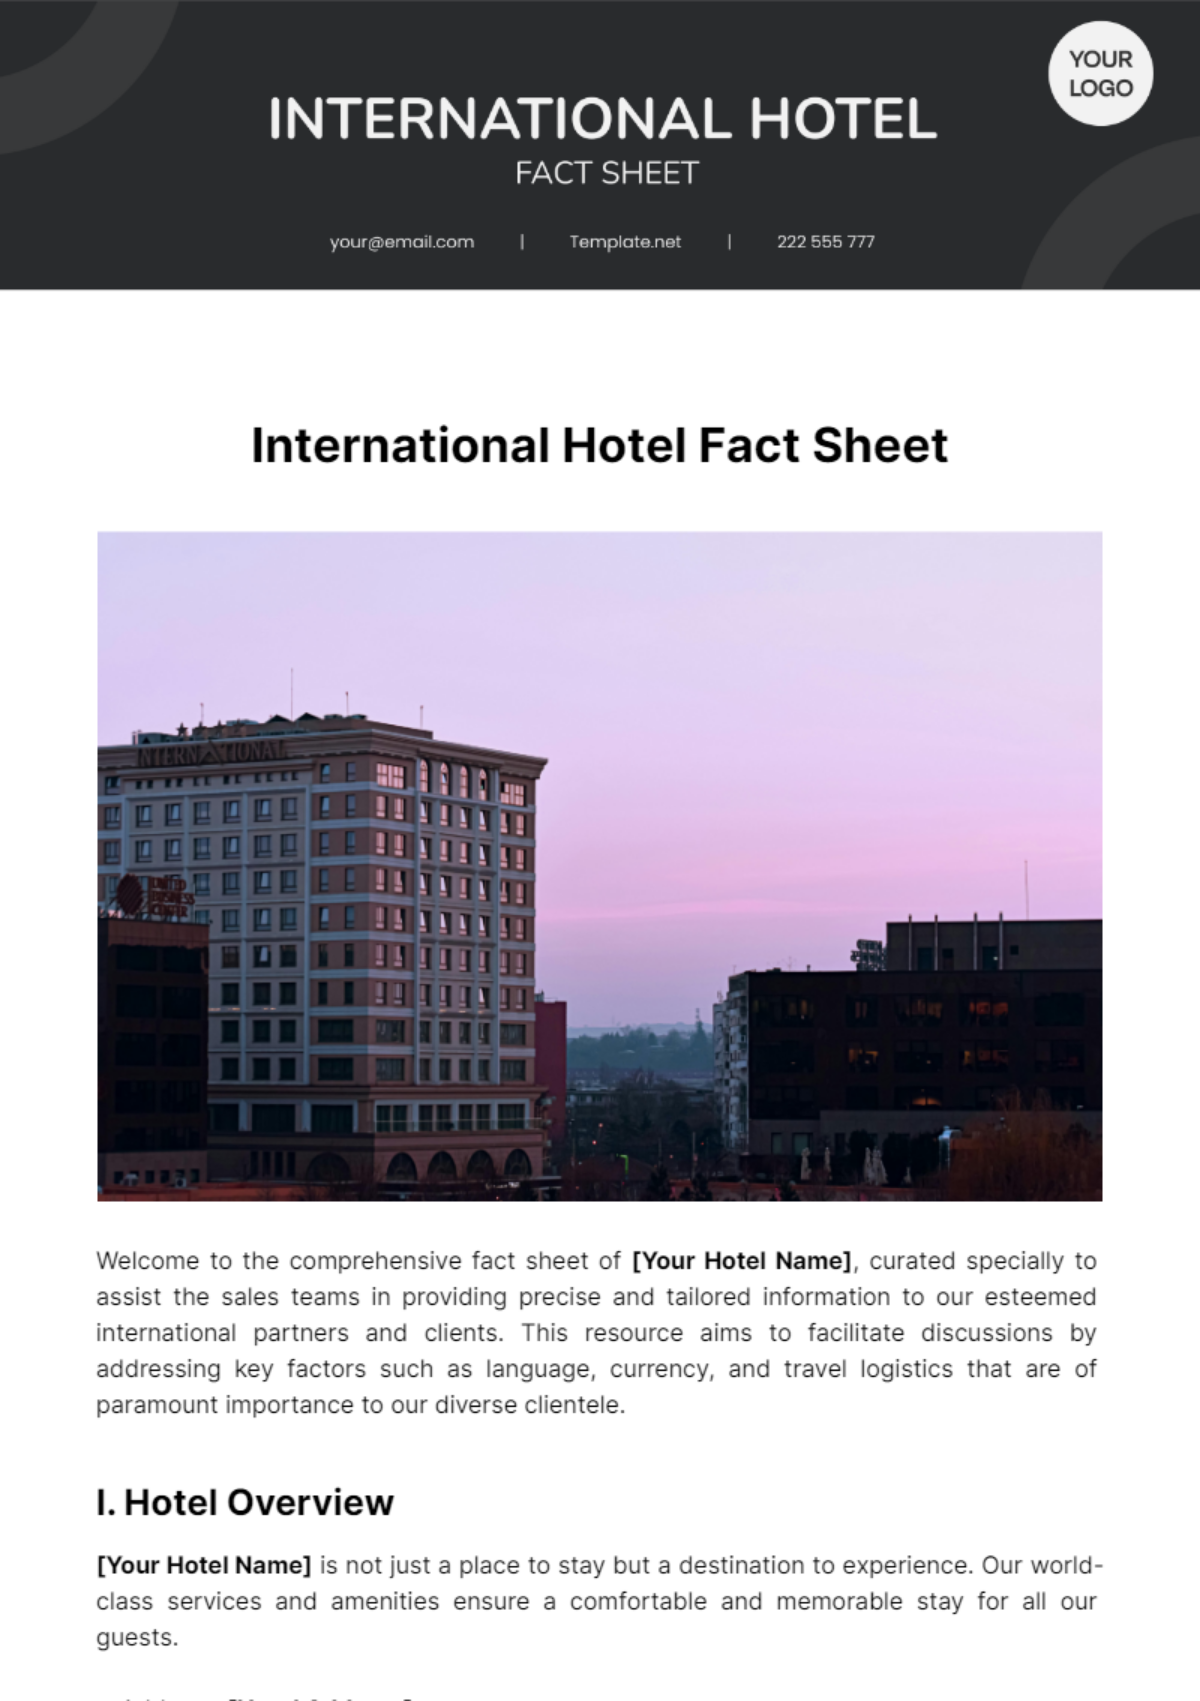 International Hotel Fact Sheet Template